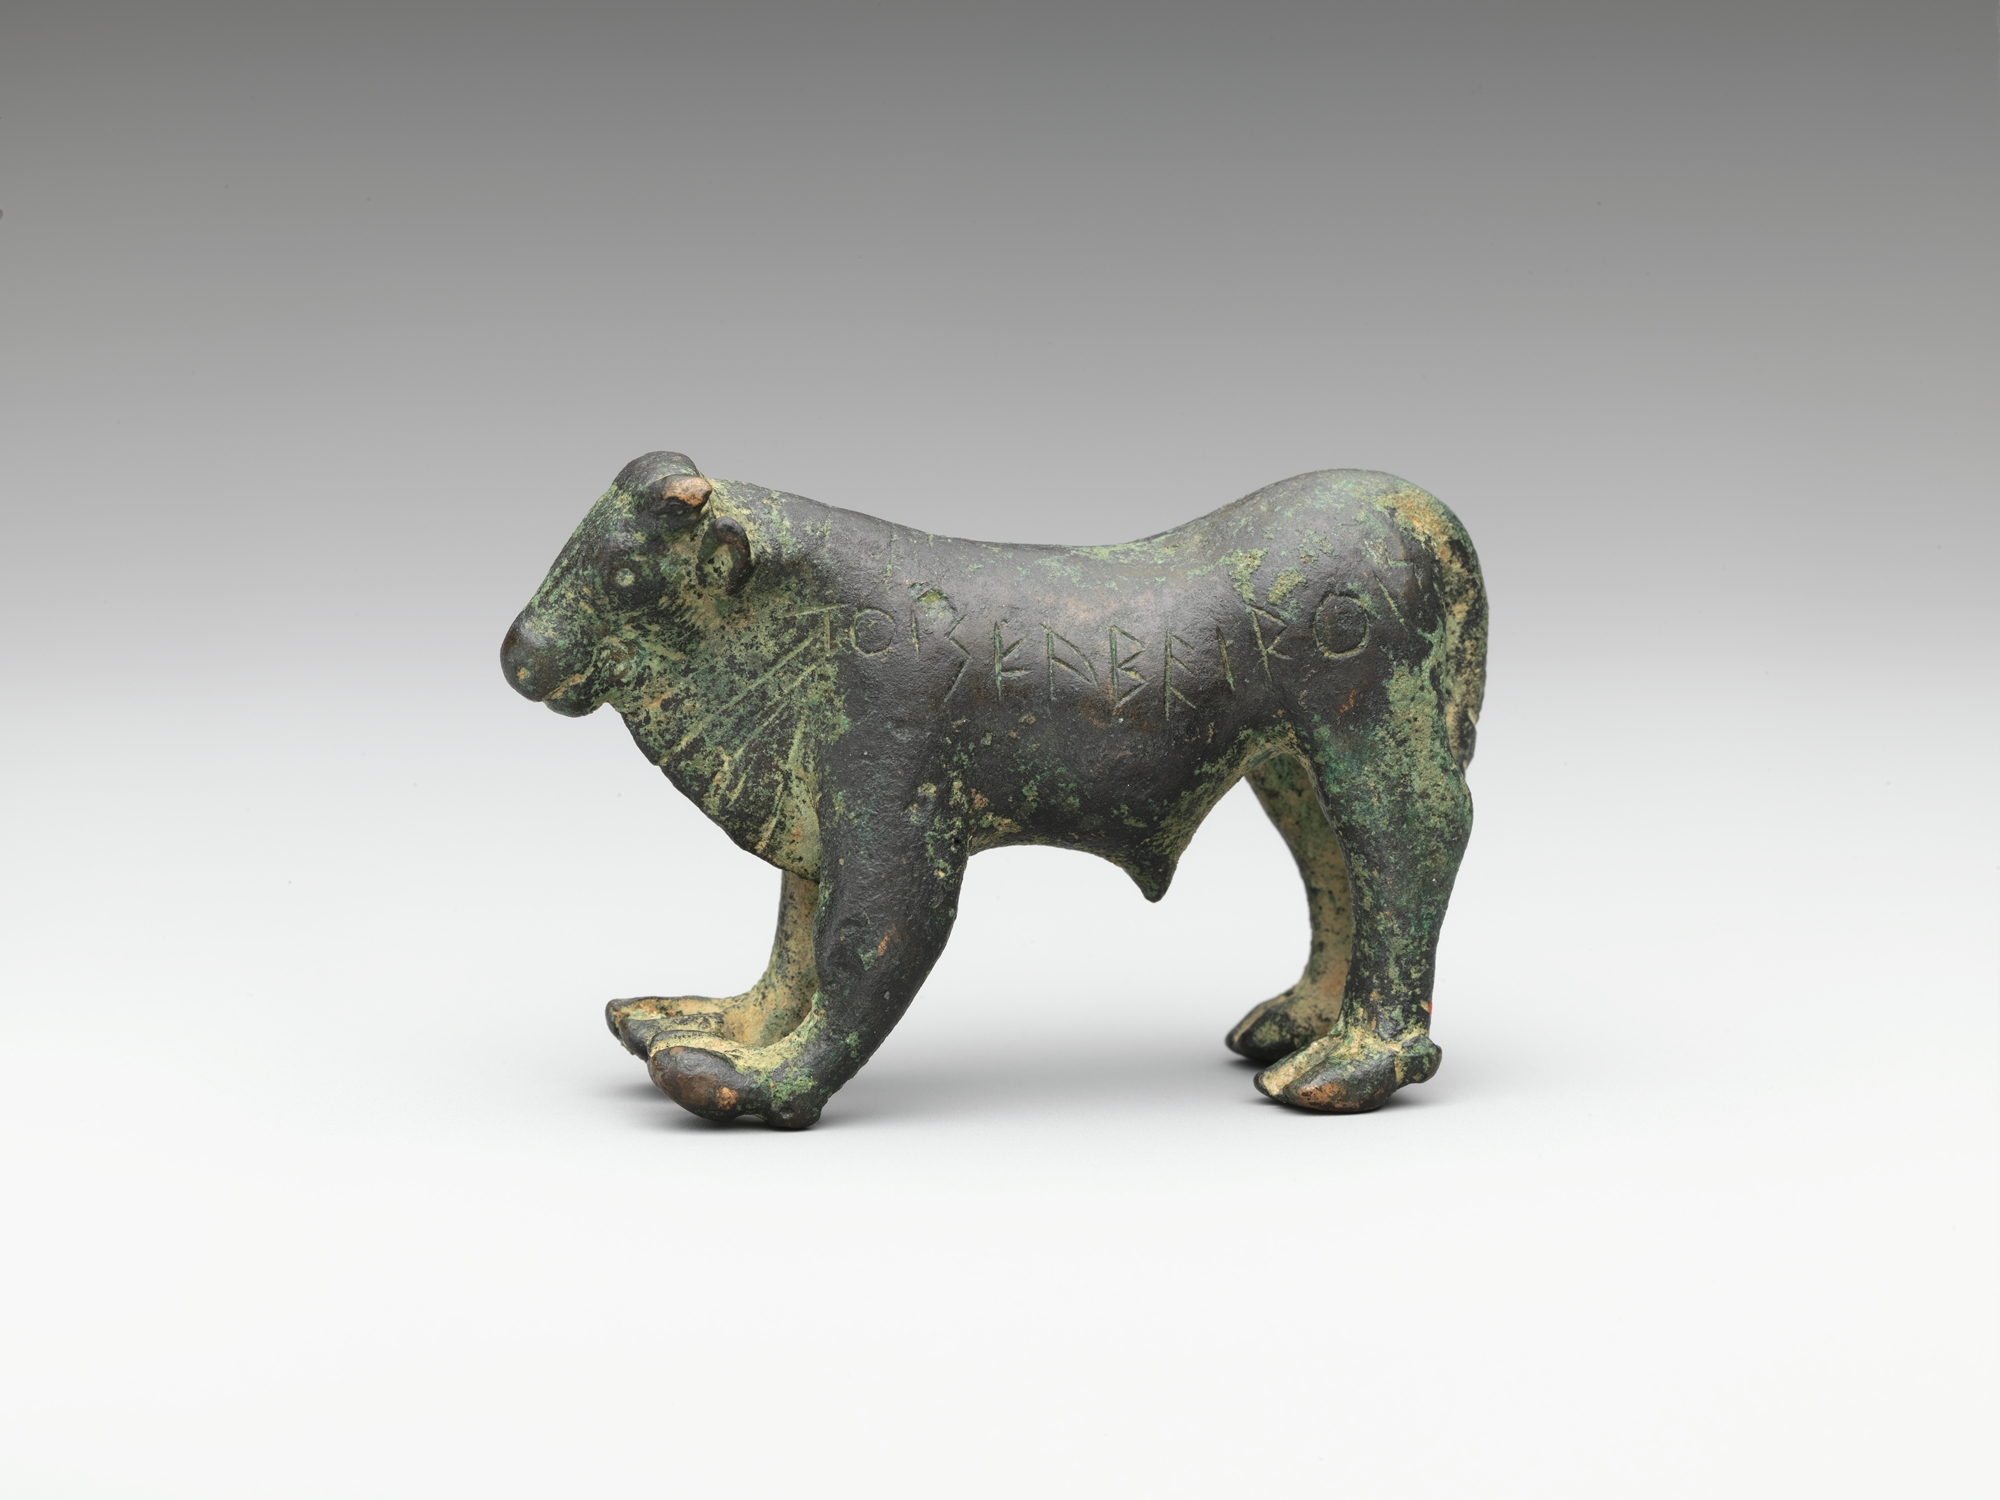 公牛铜像 by 未知艺术家  - 公元前5世纪早期 - 4 cm 